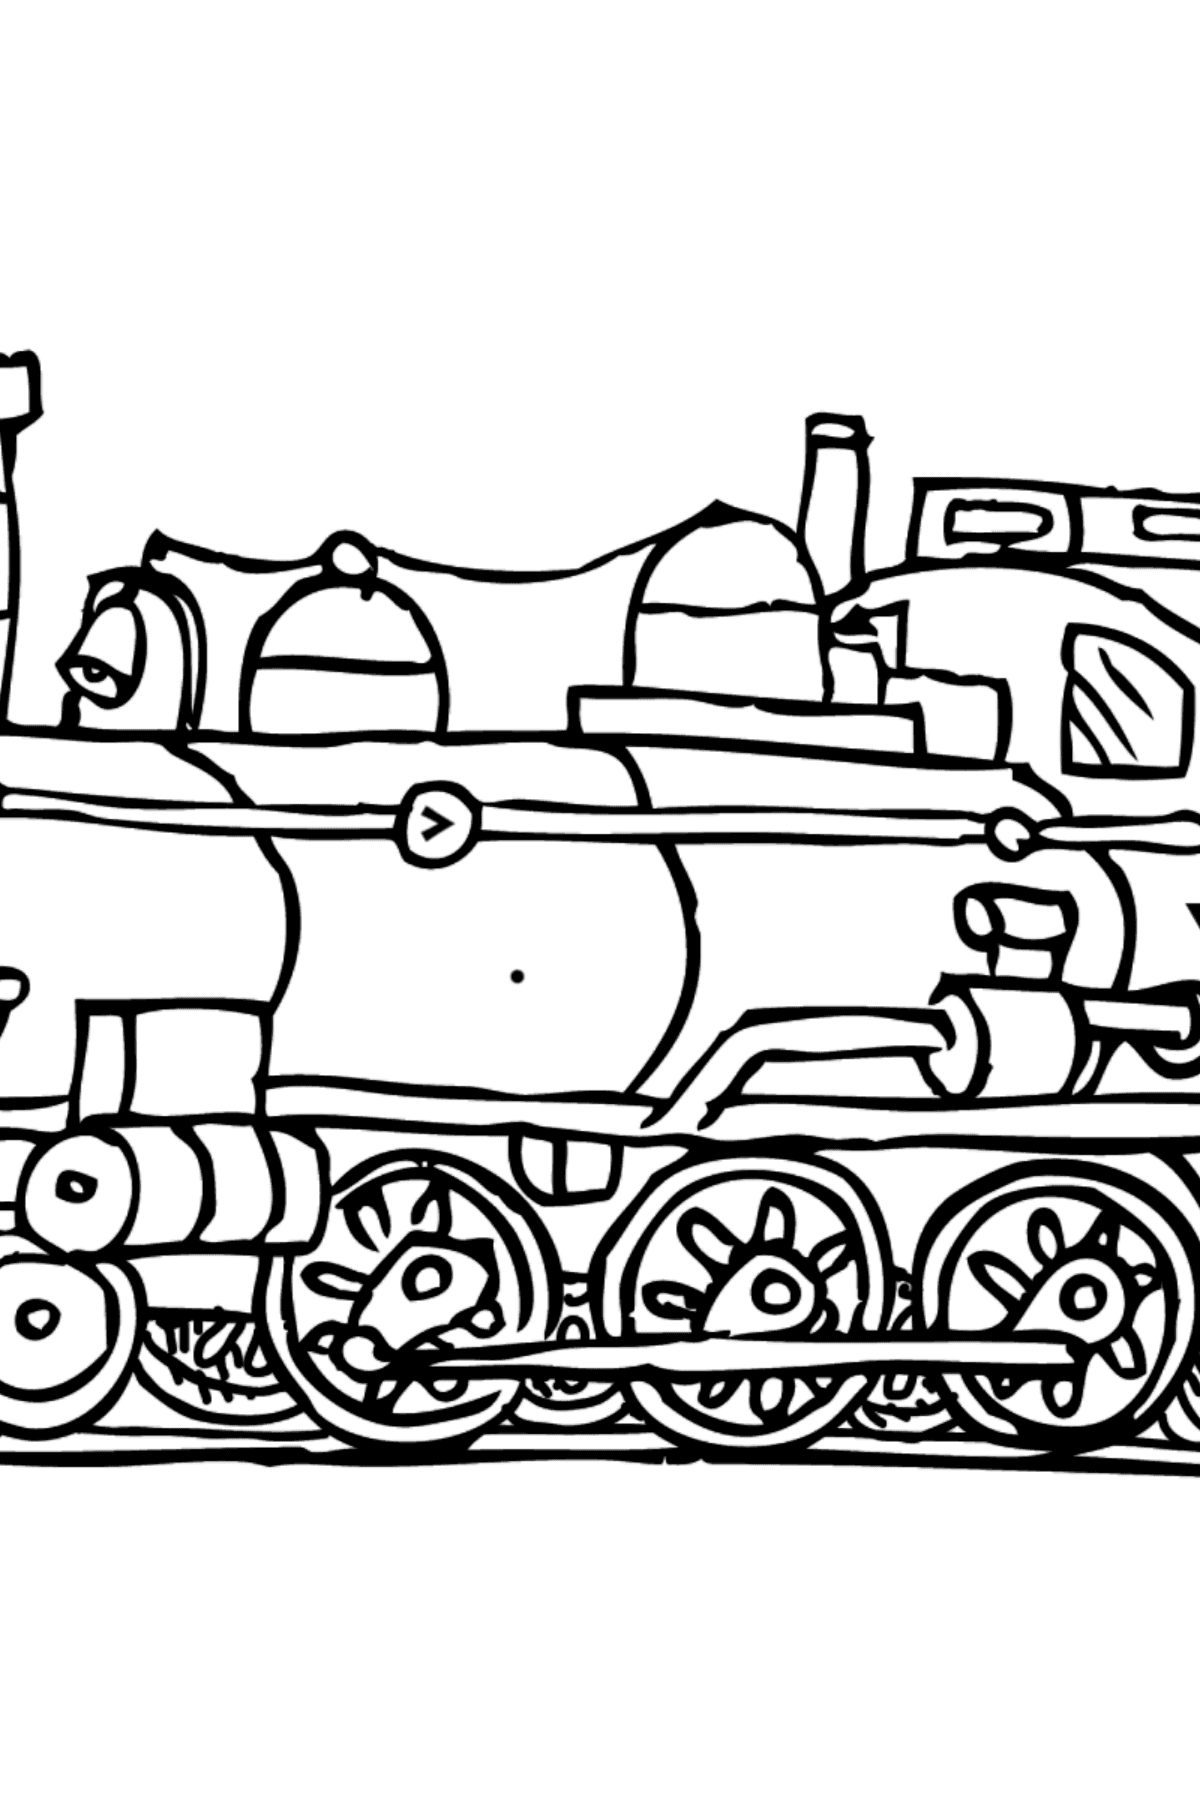 Tegning til fargelegging lokomotiv - Fargelegge etter symboler for barn